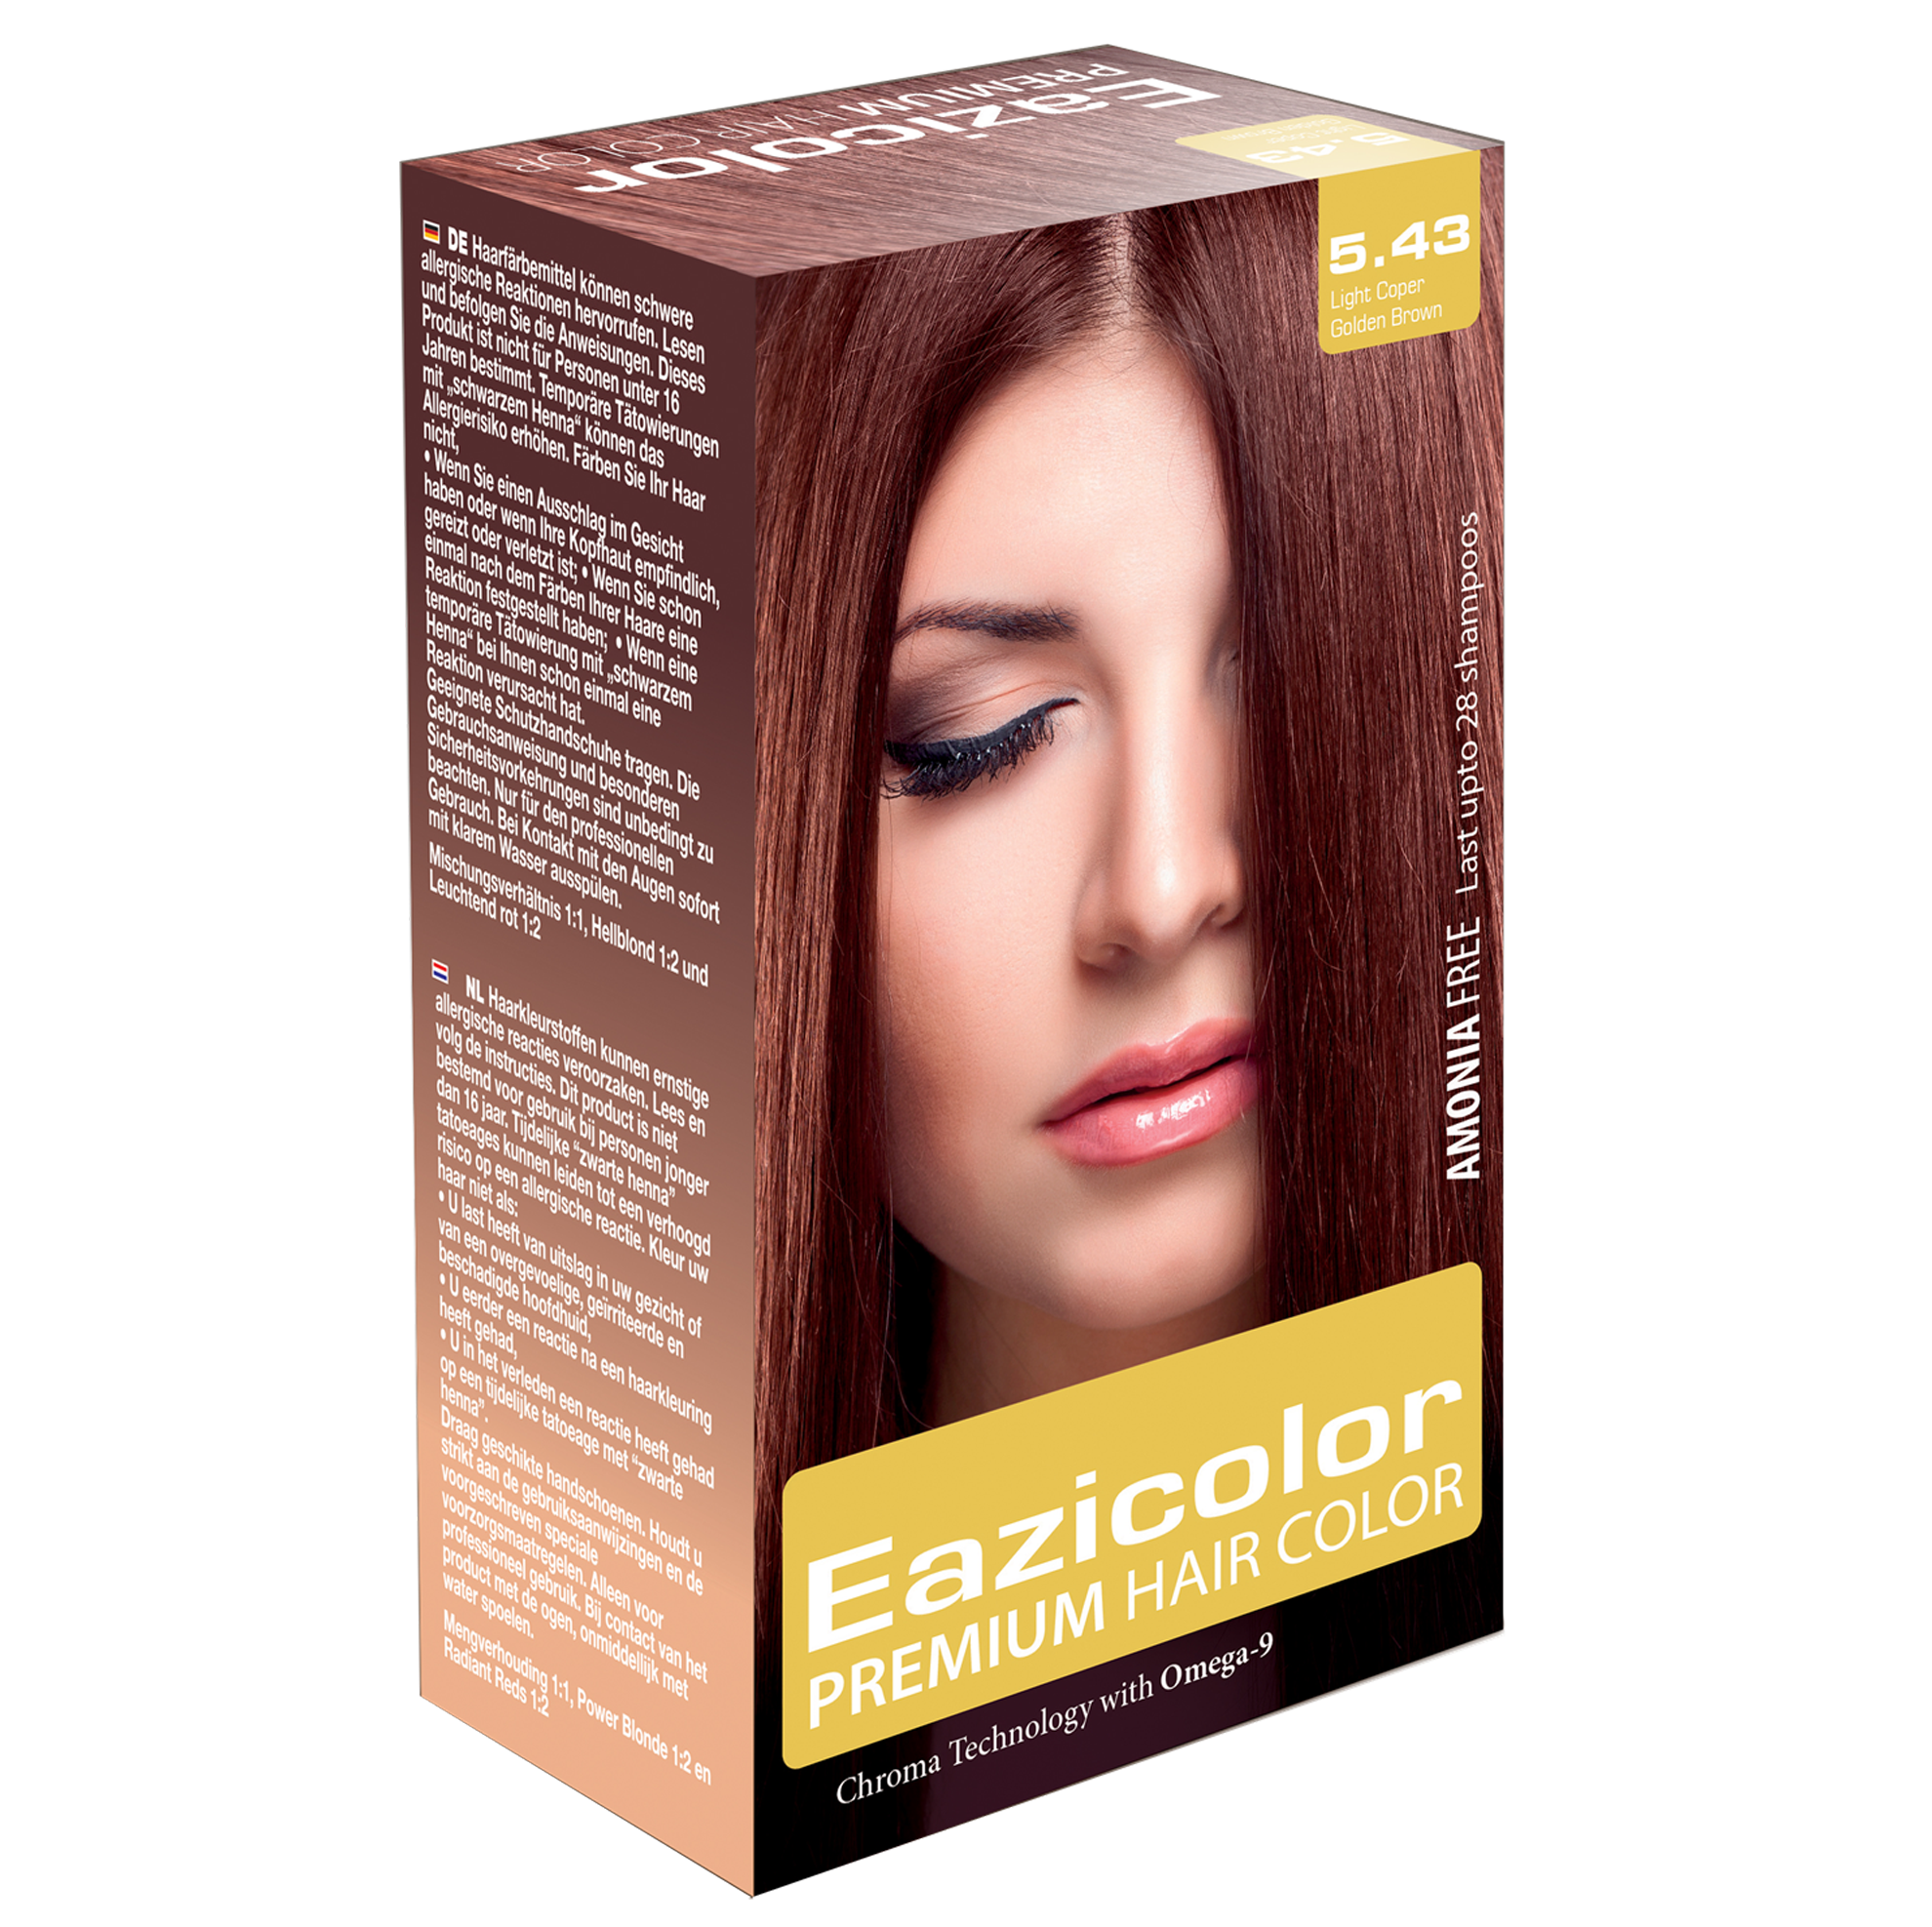 Eazicolor Premium Hair Color Kit For Women Light Copper Golden Brown  |  ezMarket